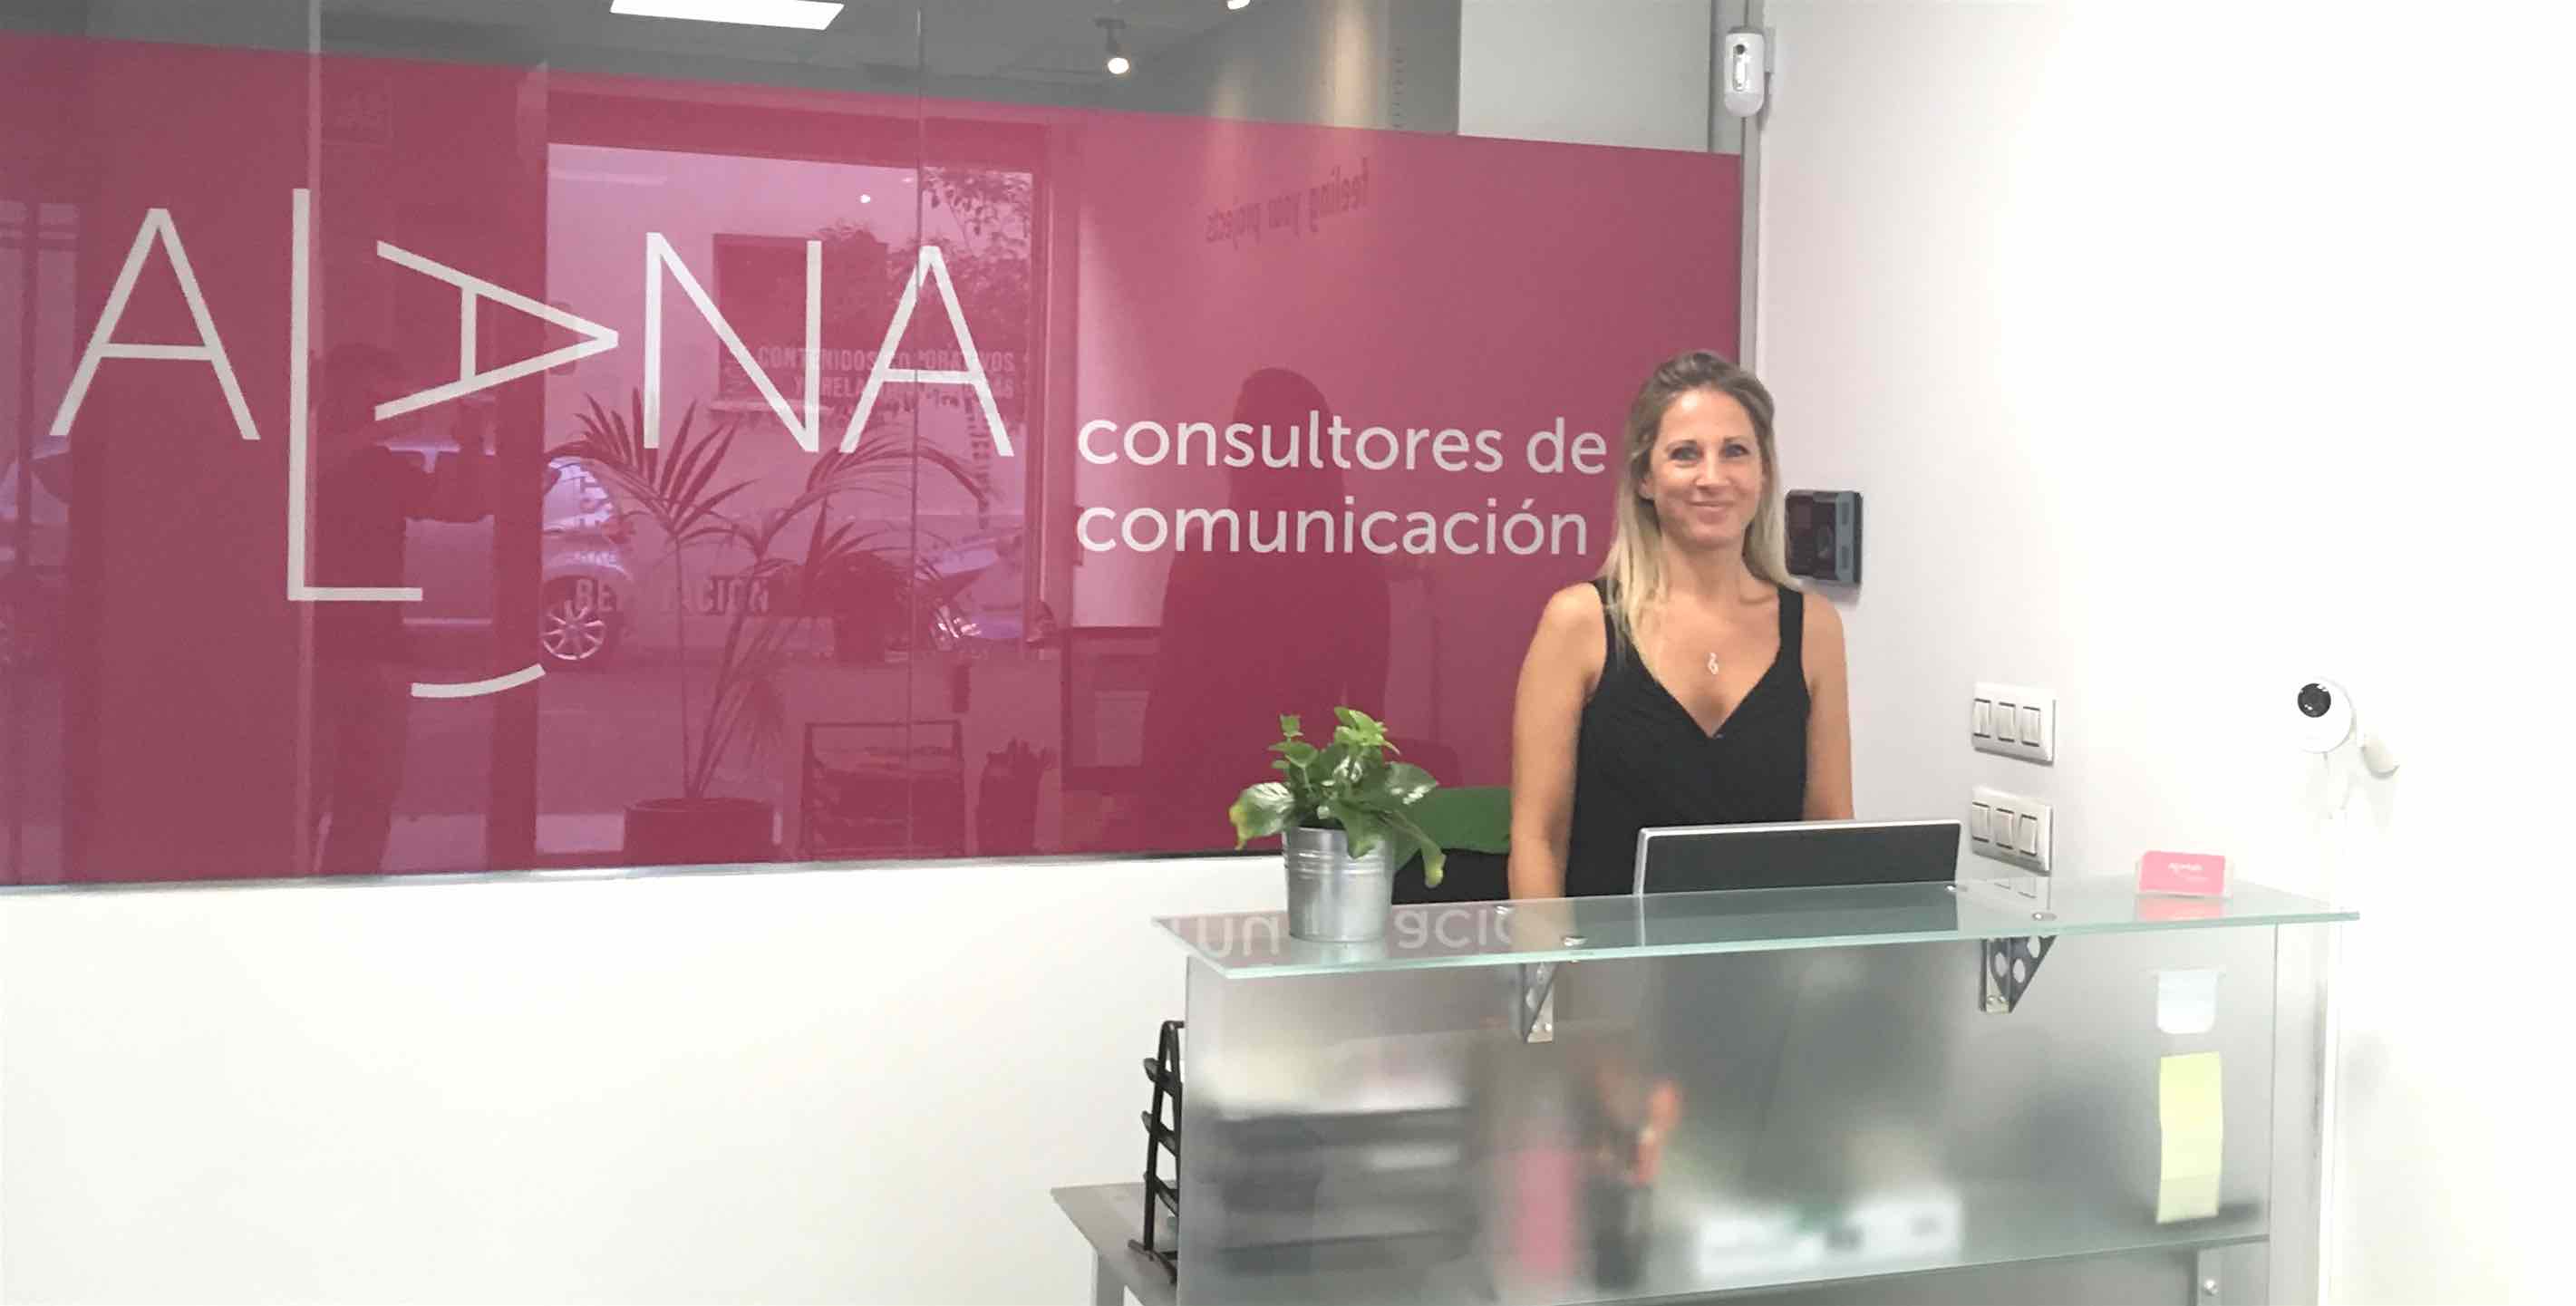 Alana Consultores de Comunicación tiene su oficina en Madrid calle Velázquez, 31